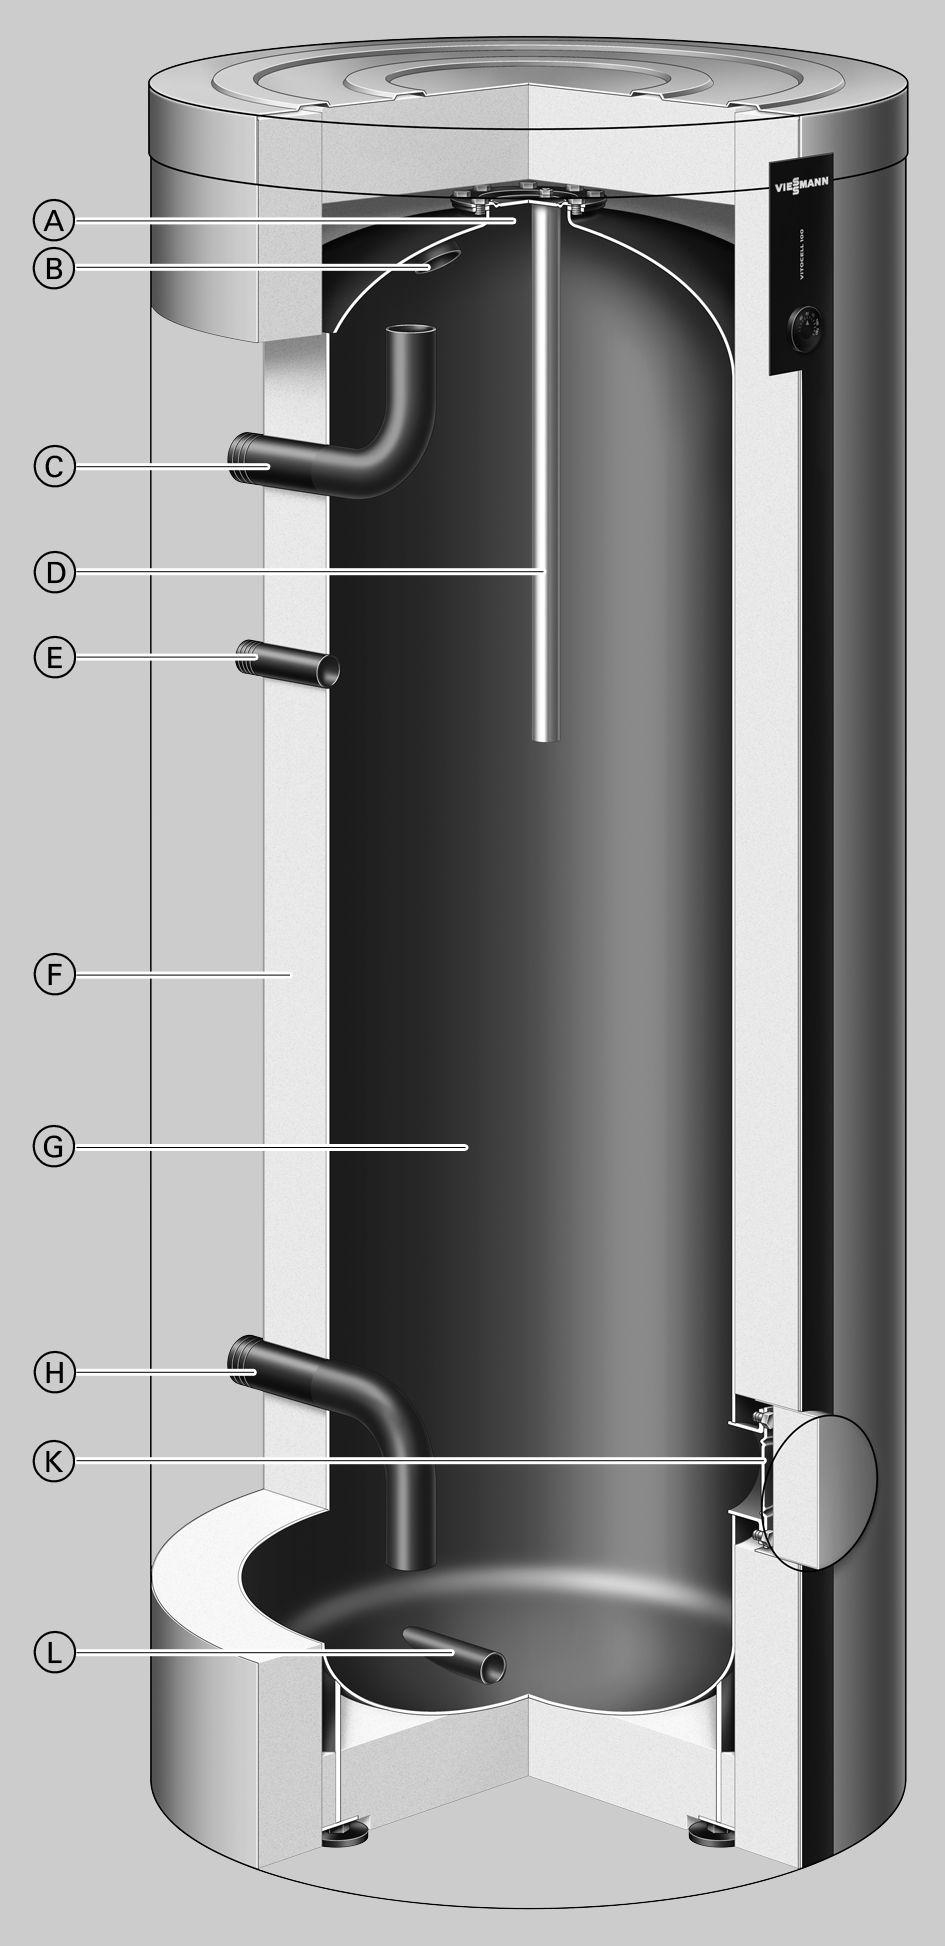 Podsumowanie zalet (ciąg dalszy) Vitocell 100-L, typ CVL, 500 l Górny otwór rewizyjny i wyczystkowy B Ciepła woda użytkowa C Wlot ciepłej wody użytkowej od strony wymiennika ciepła D noda magnezowa